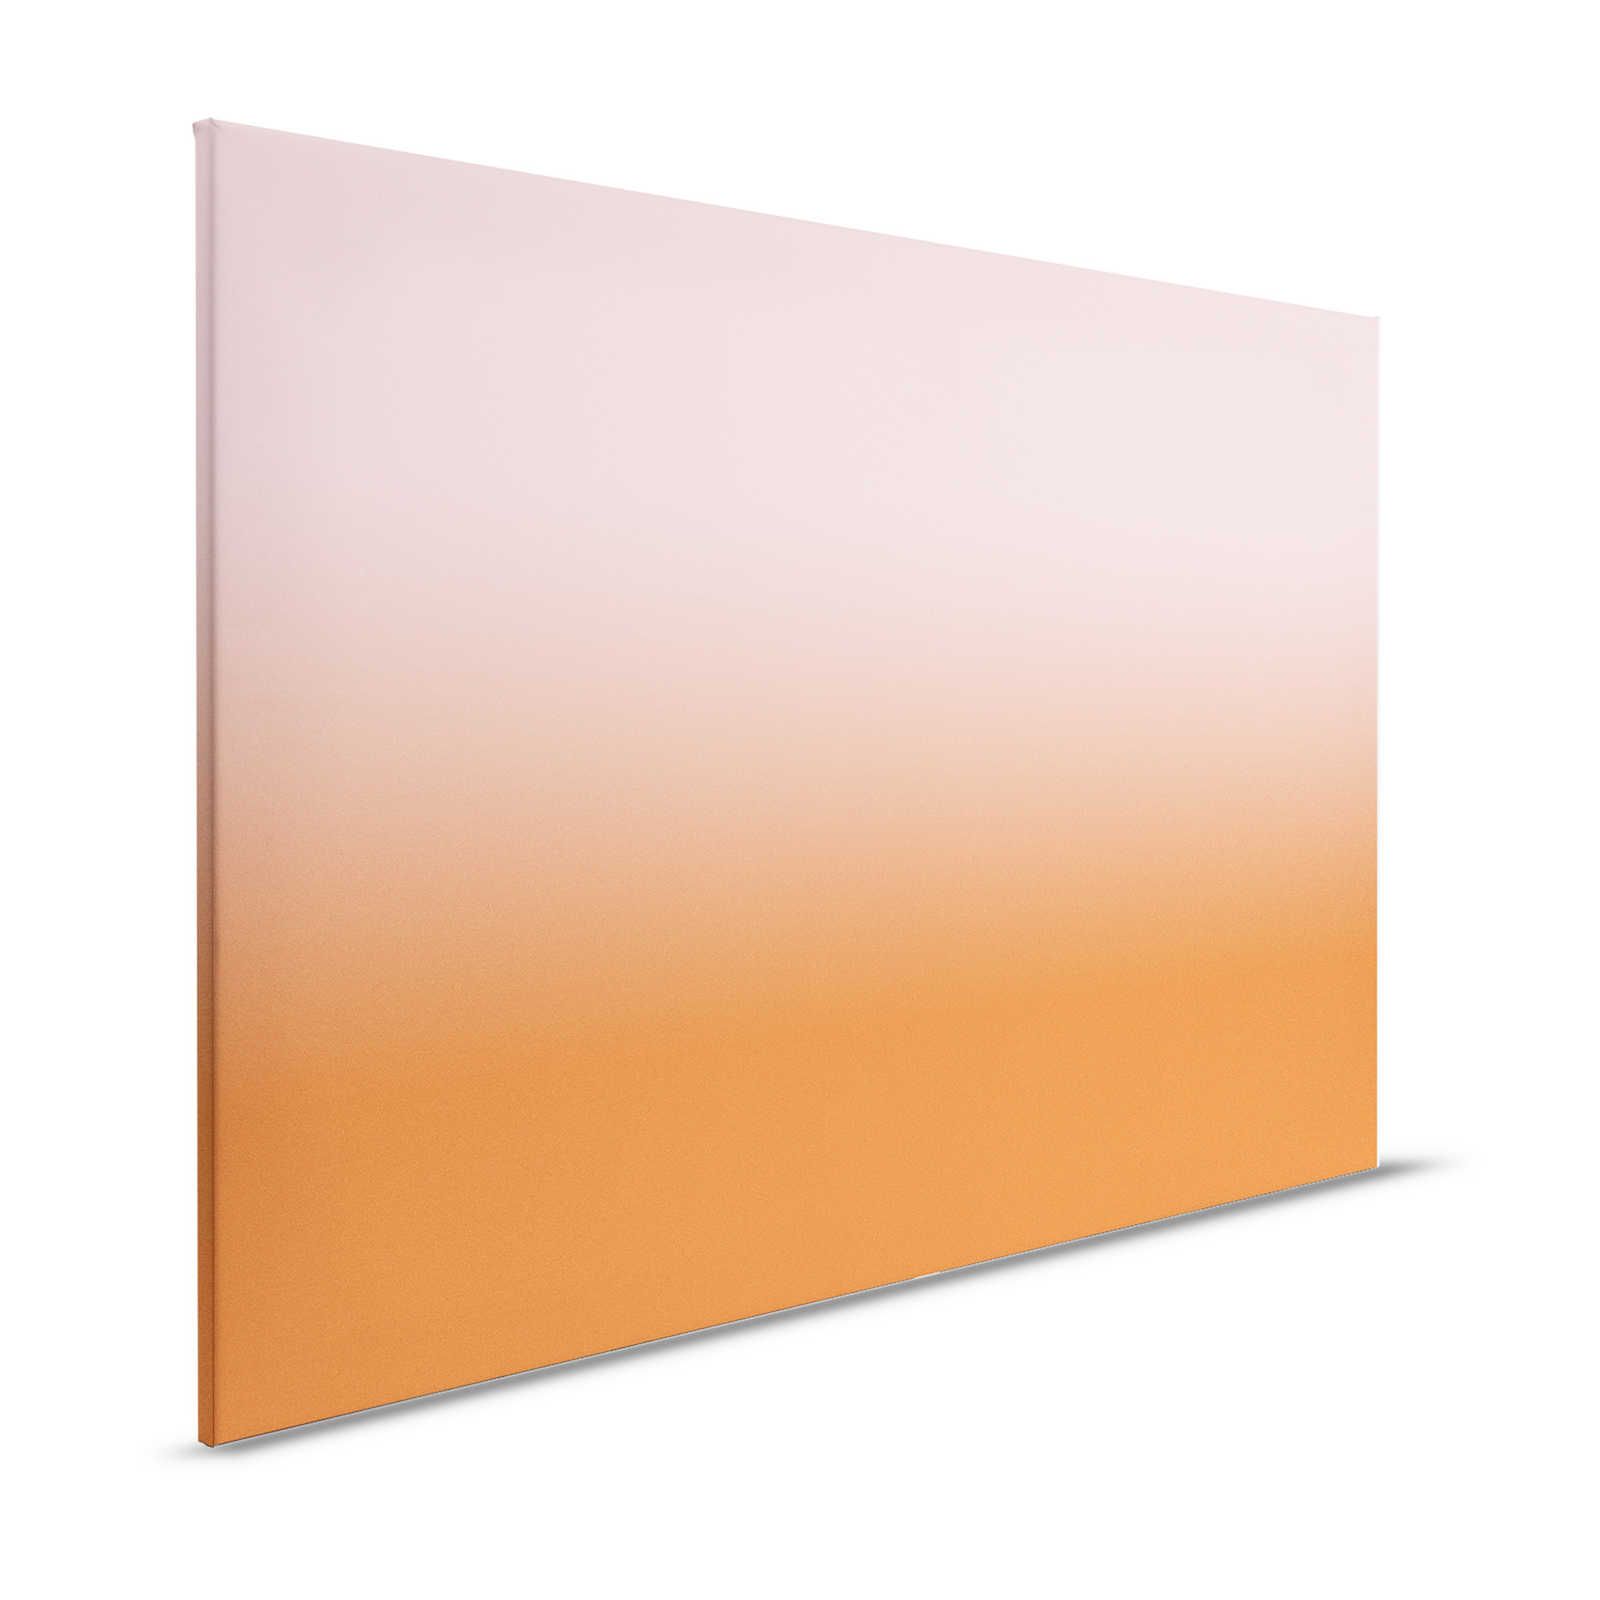 Colour Studio 4 - Toile Ombre Dégradé Rose & Orange - 1,20 m x 0,80 m
